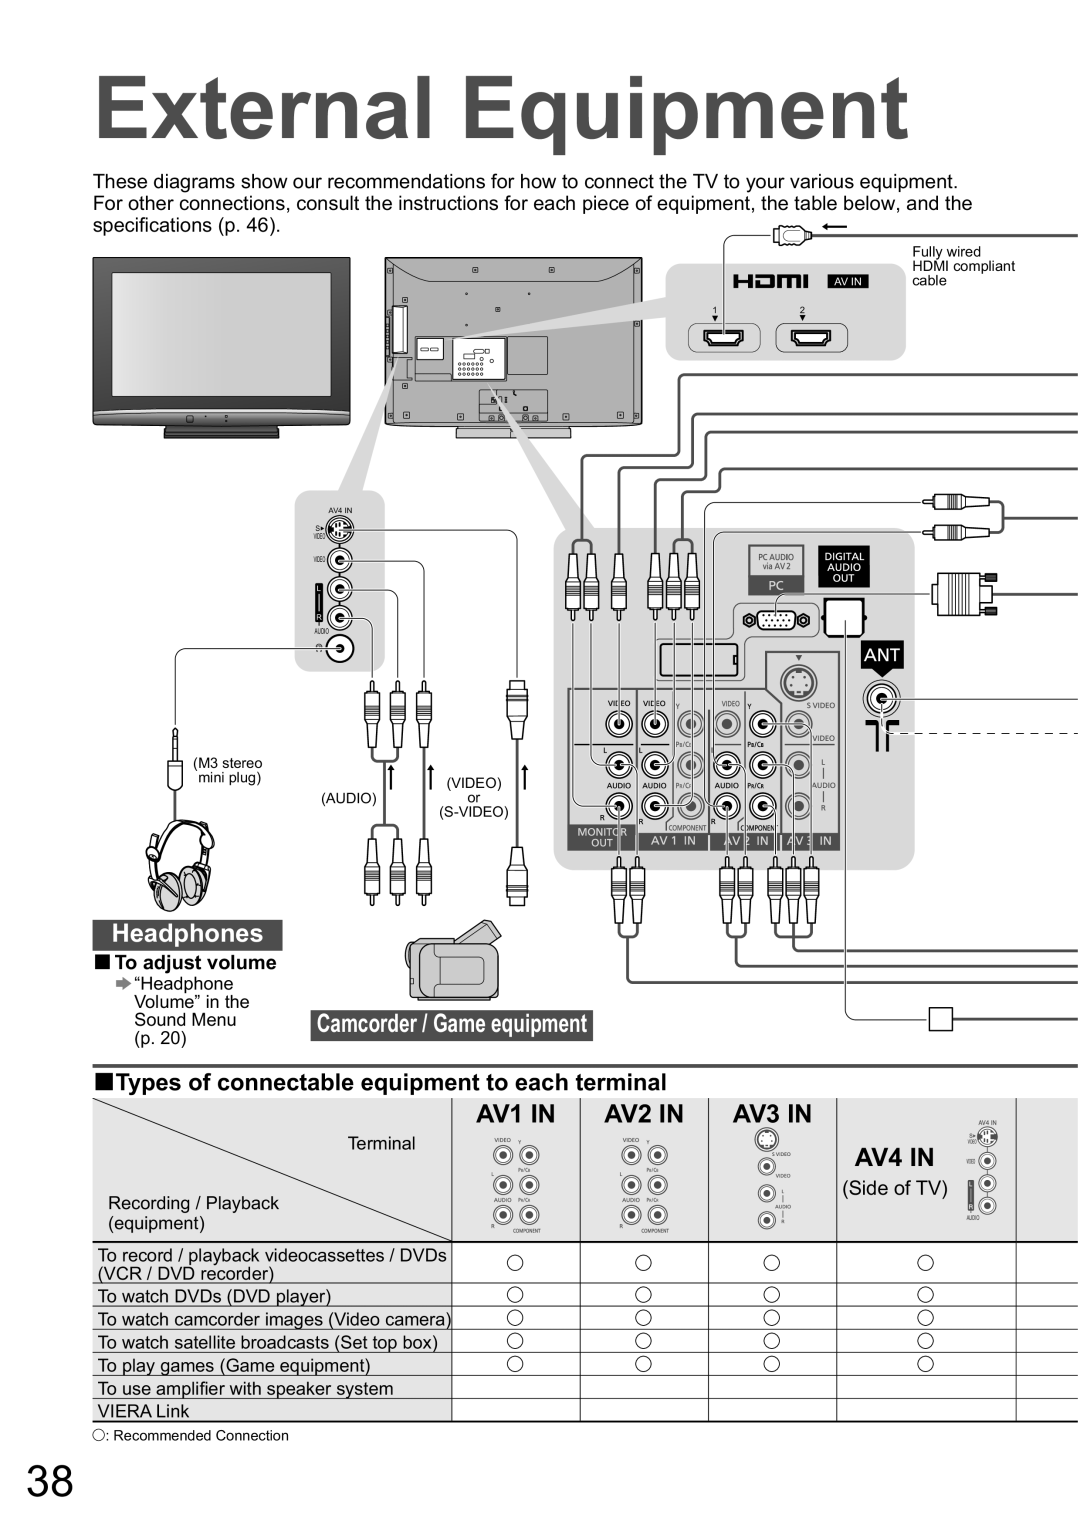 Panasonic TX-32LXD8A manual External Equipment, Headphones, Camcorder / Game equipment, AV1 IN, AV2 IN, AV4 IN, AV3 IN 